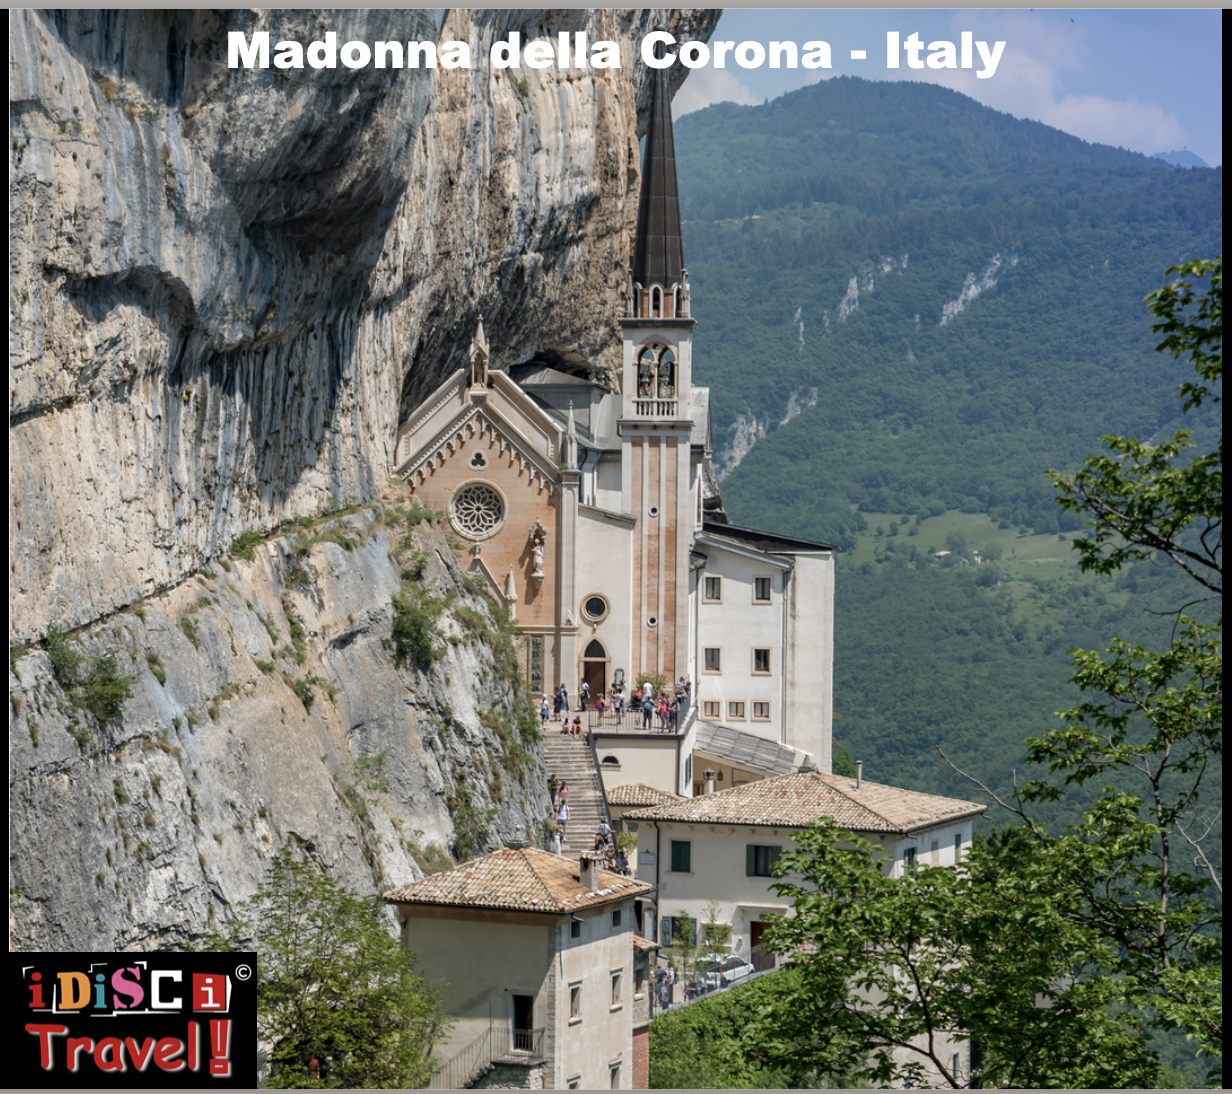 ITALY - Madonna della Coronanear LAKE GARDA // BEAUTIFULCHAPEL - A MUST SEE!